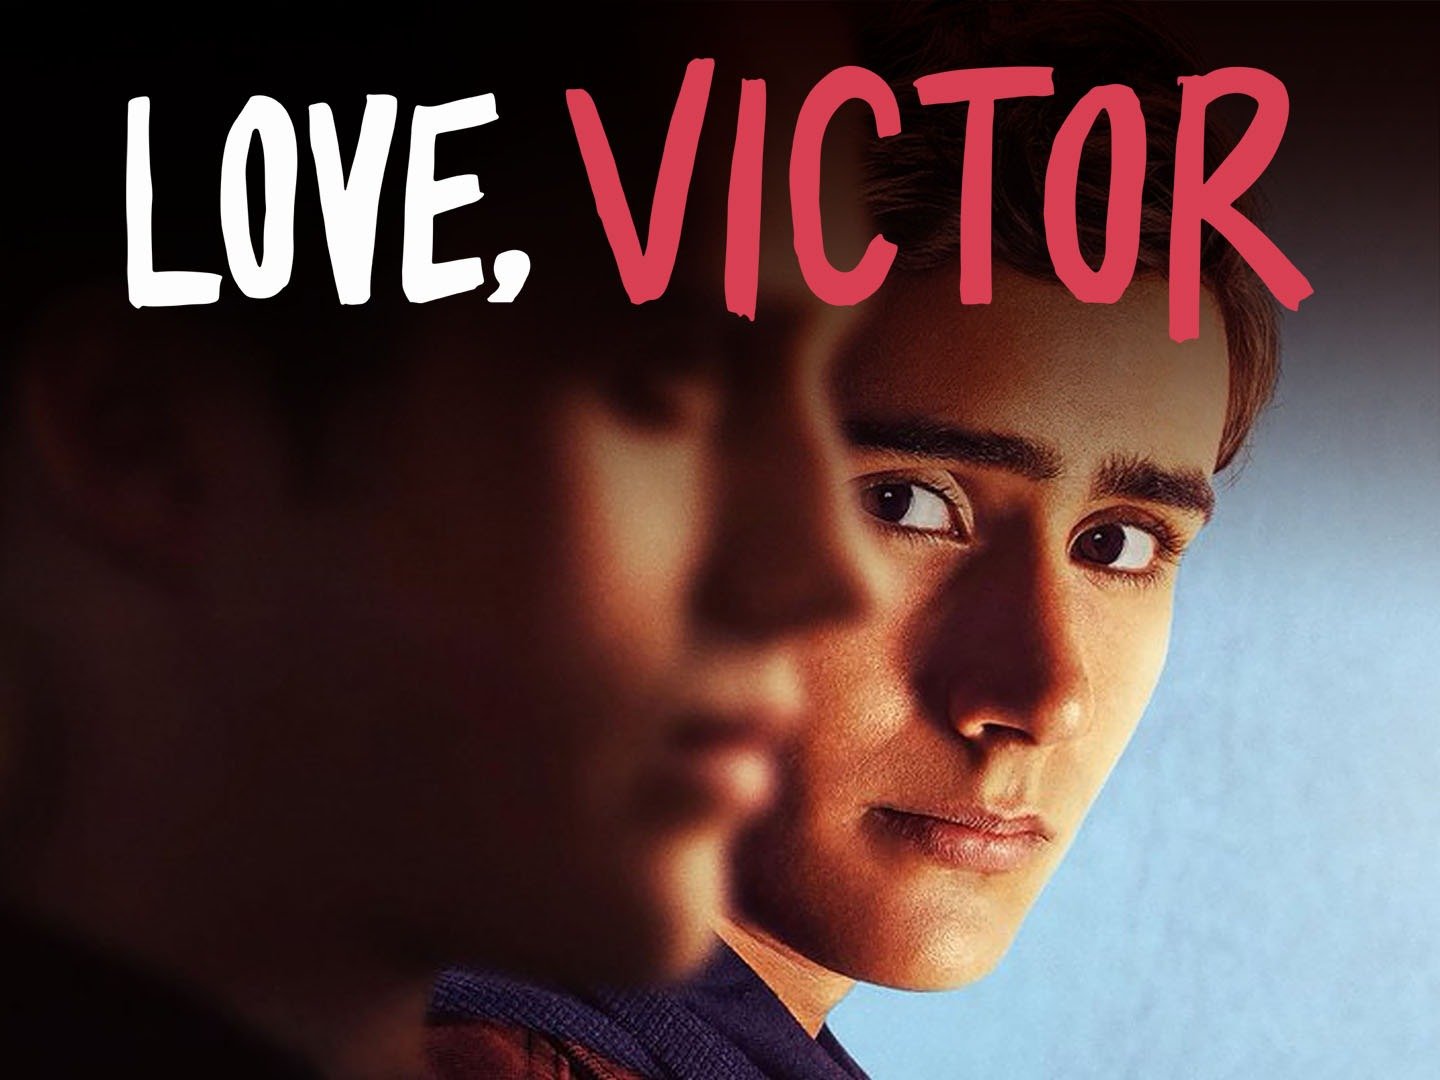 Love victor season 2